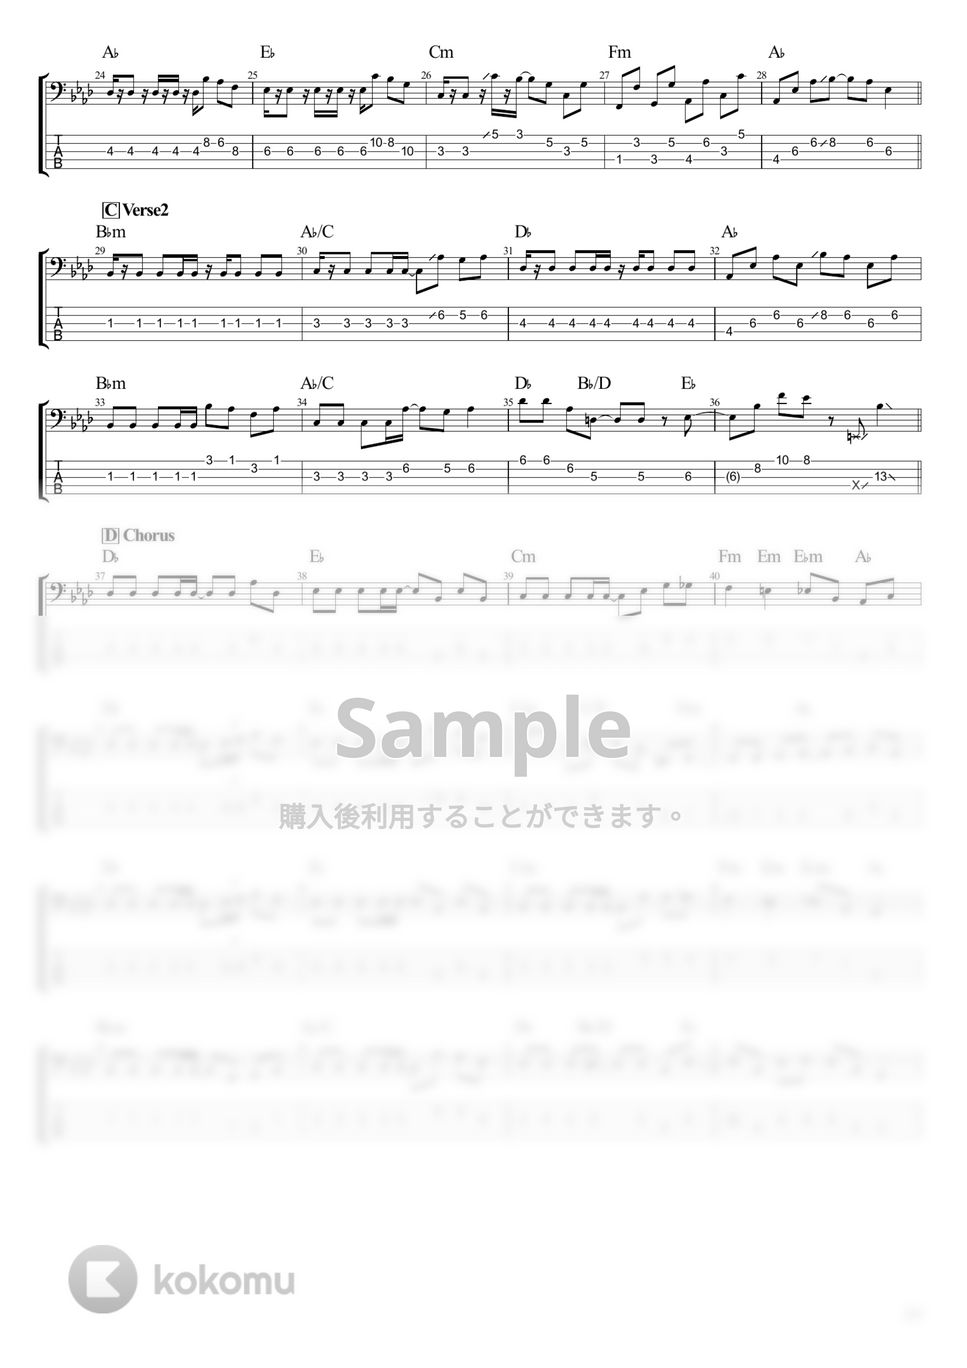 結束バンド - 星座になれたら (ベース Tab譜 5弦) by T's bass score